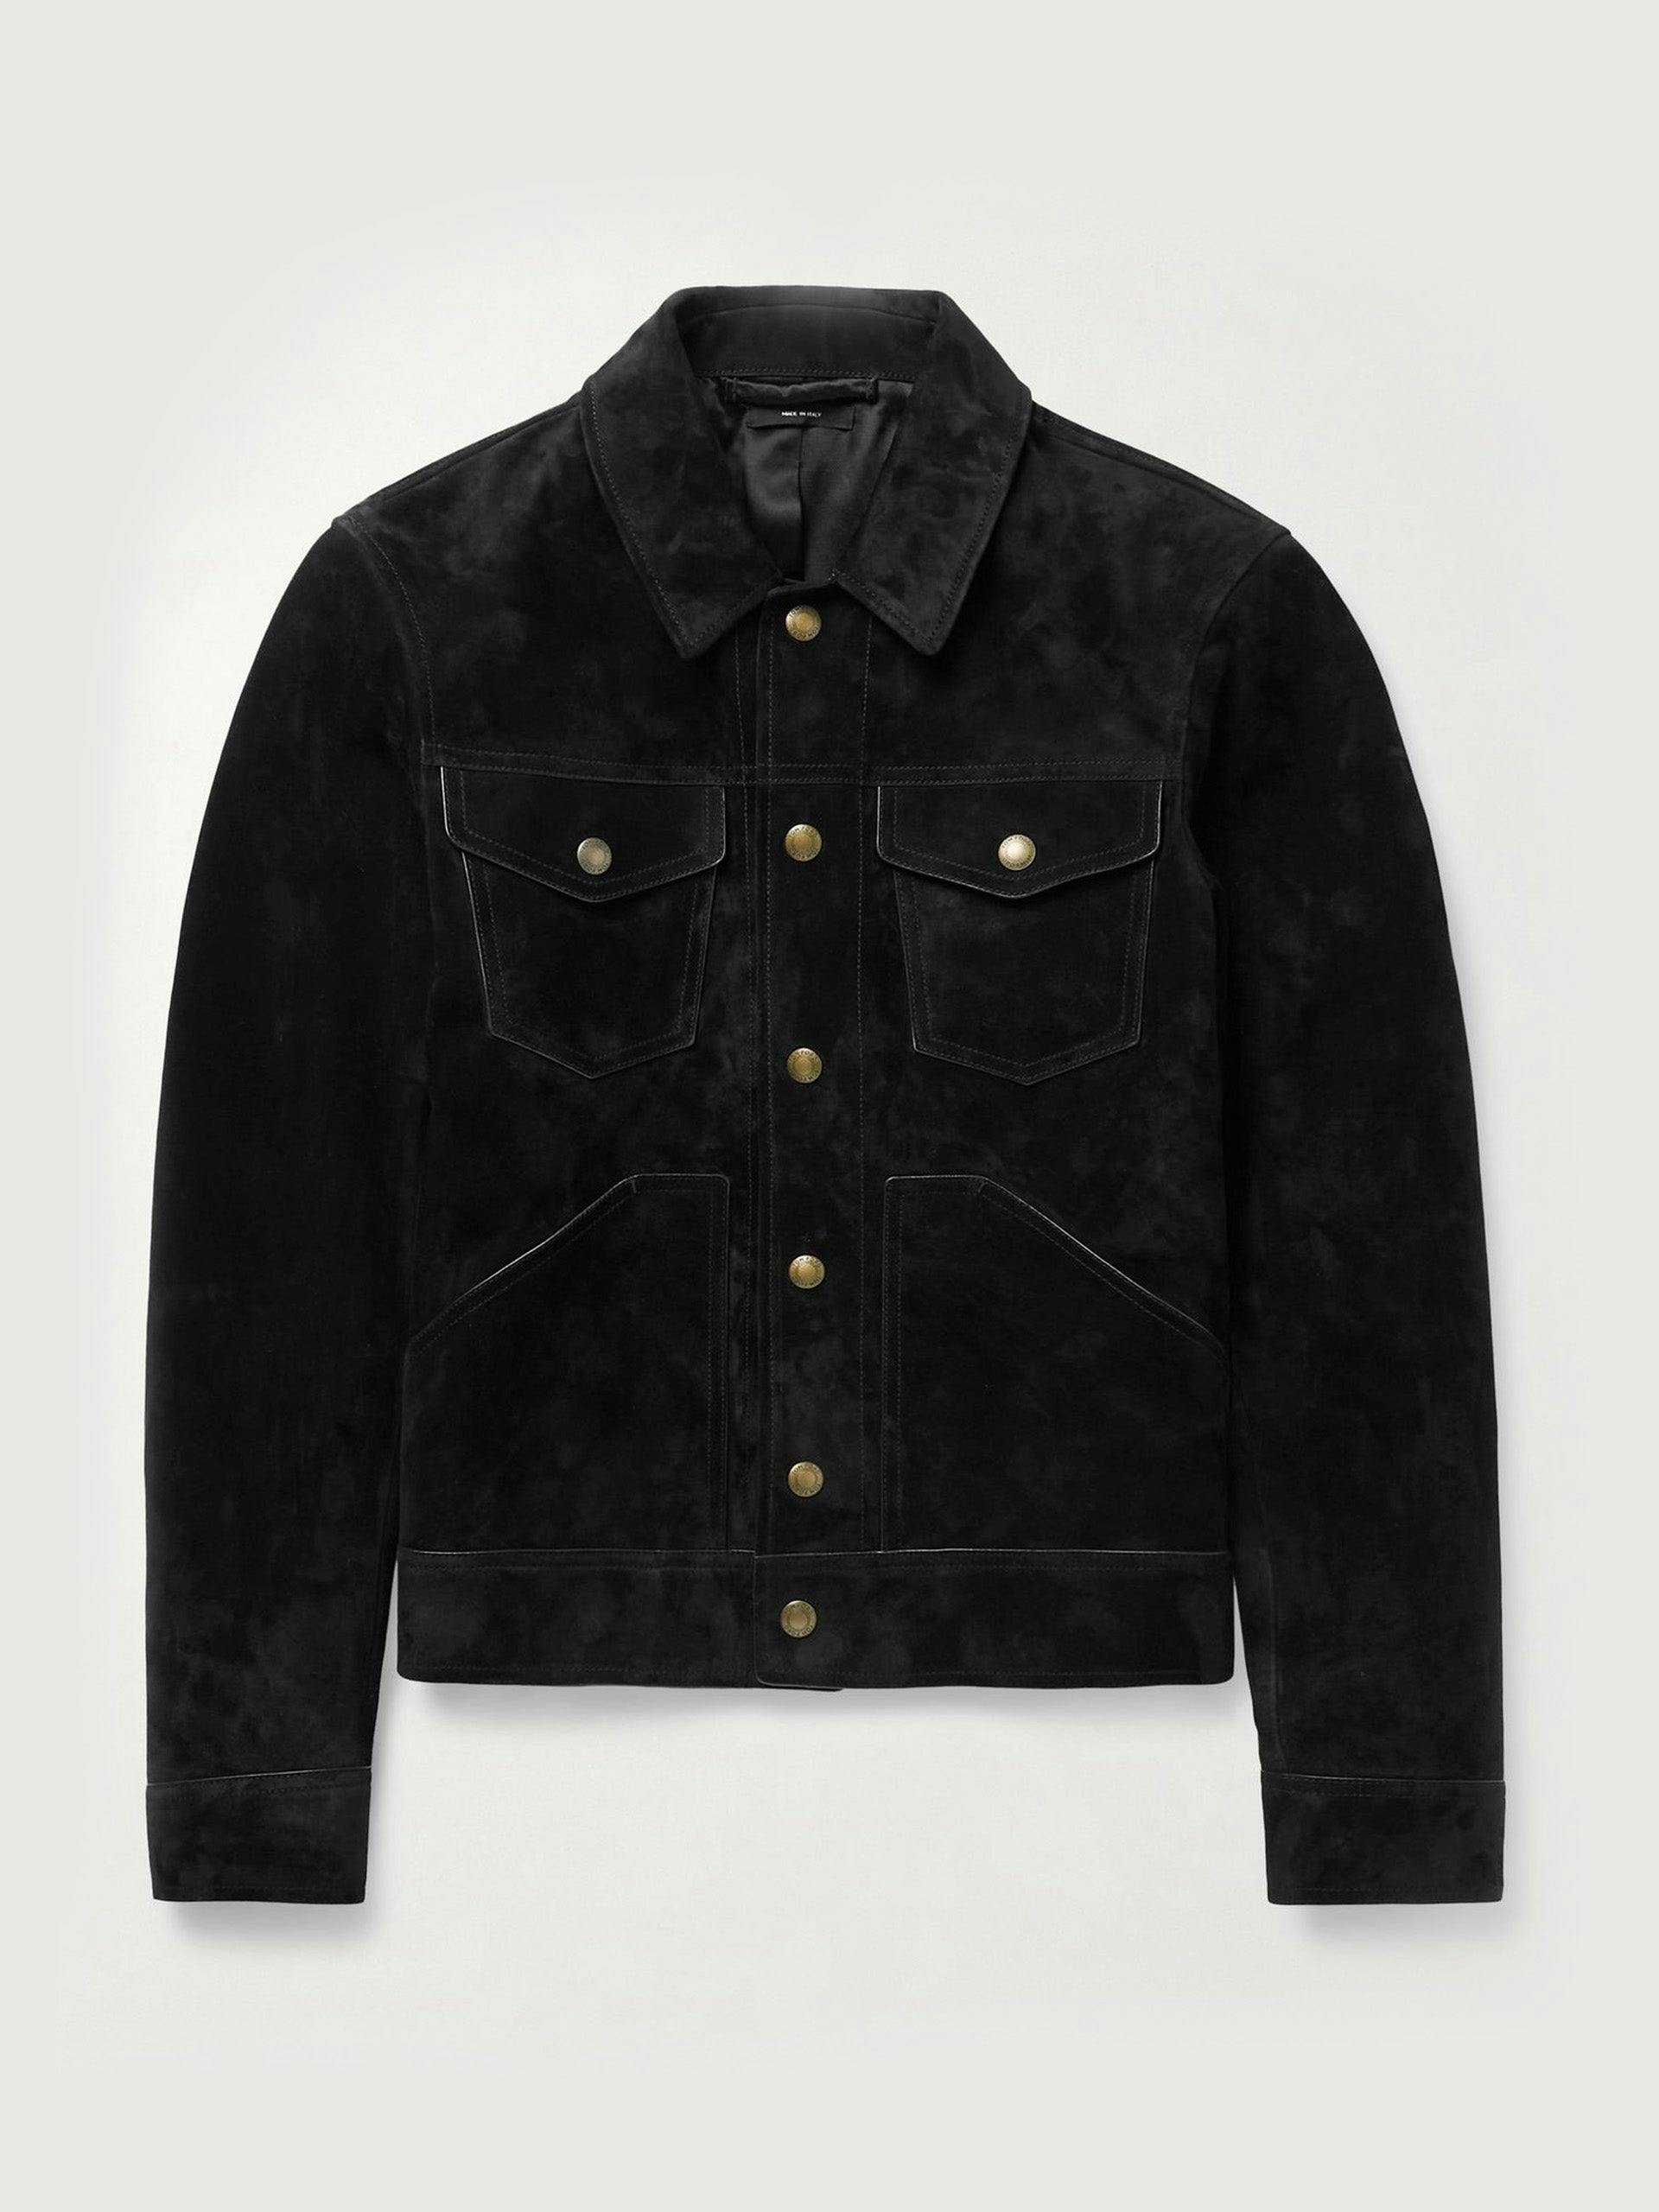 Black suede western jacket